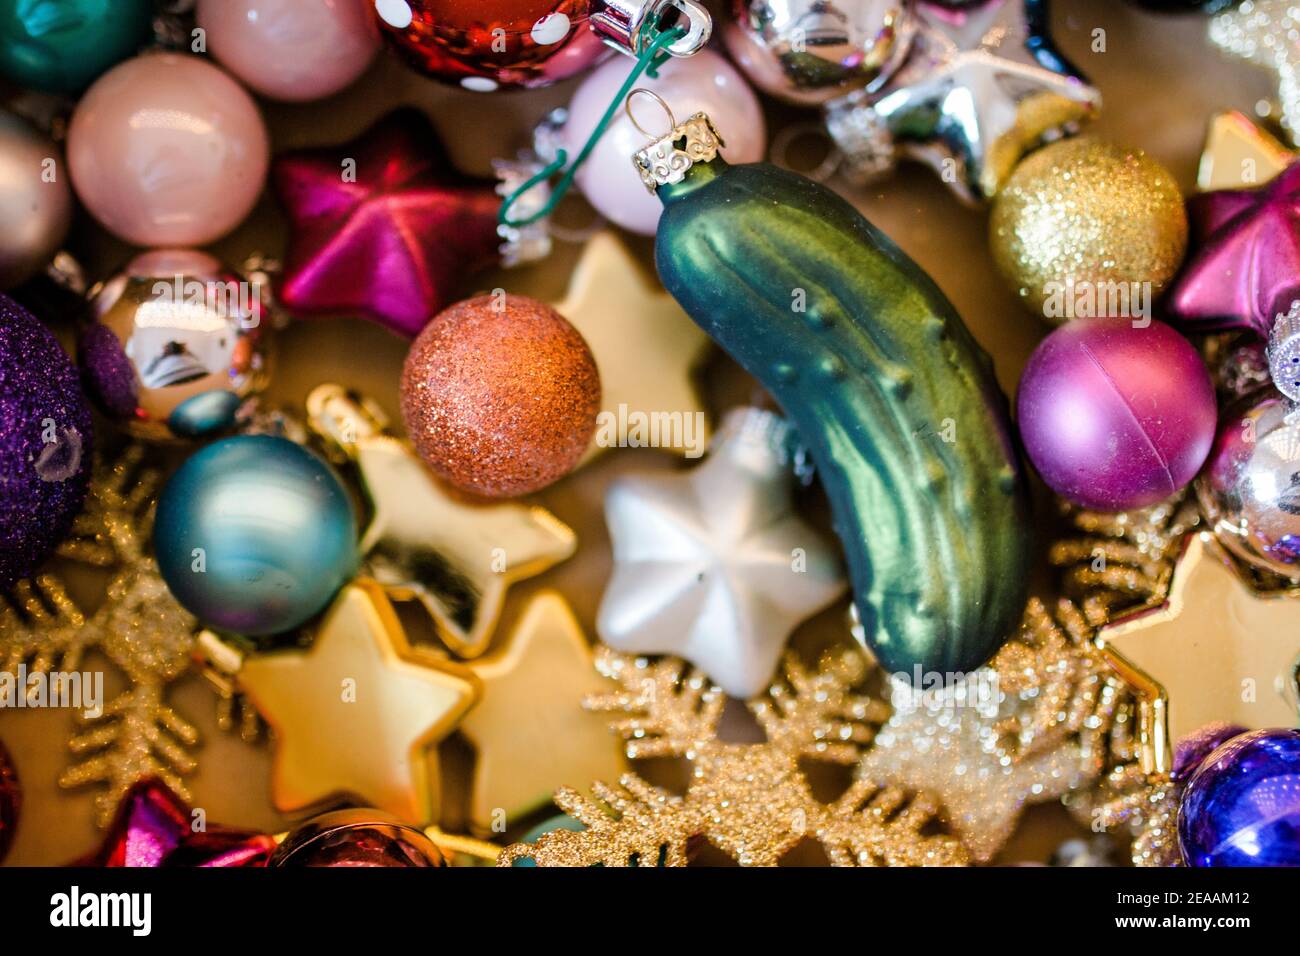 Decorazioni natalizie, baubles natalizi varie forme e colori colorati con cetriolo natalizio / sottaceti natalizi Foto Stock